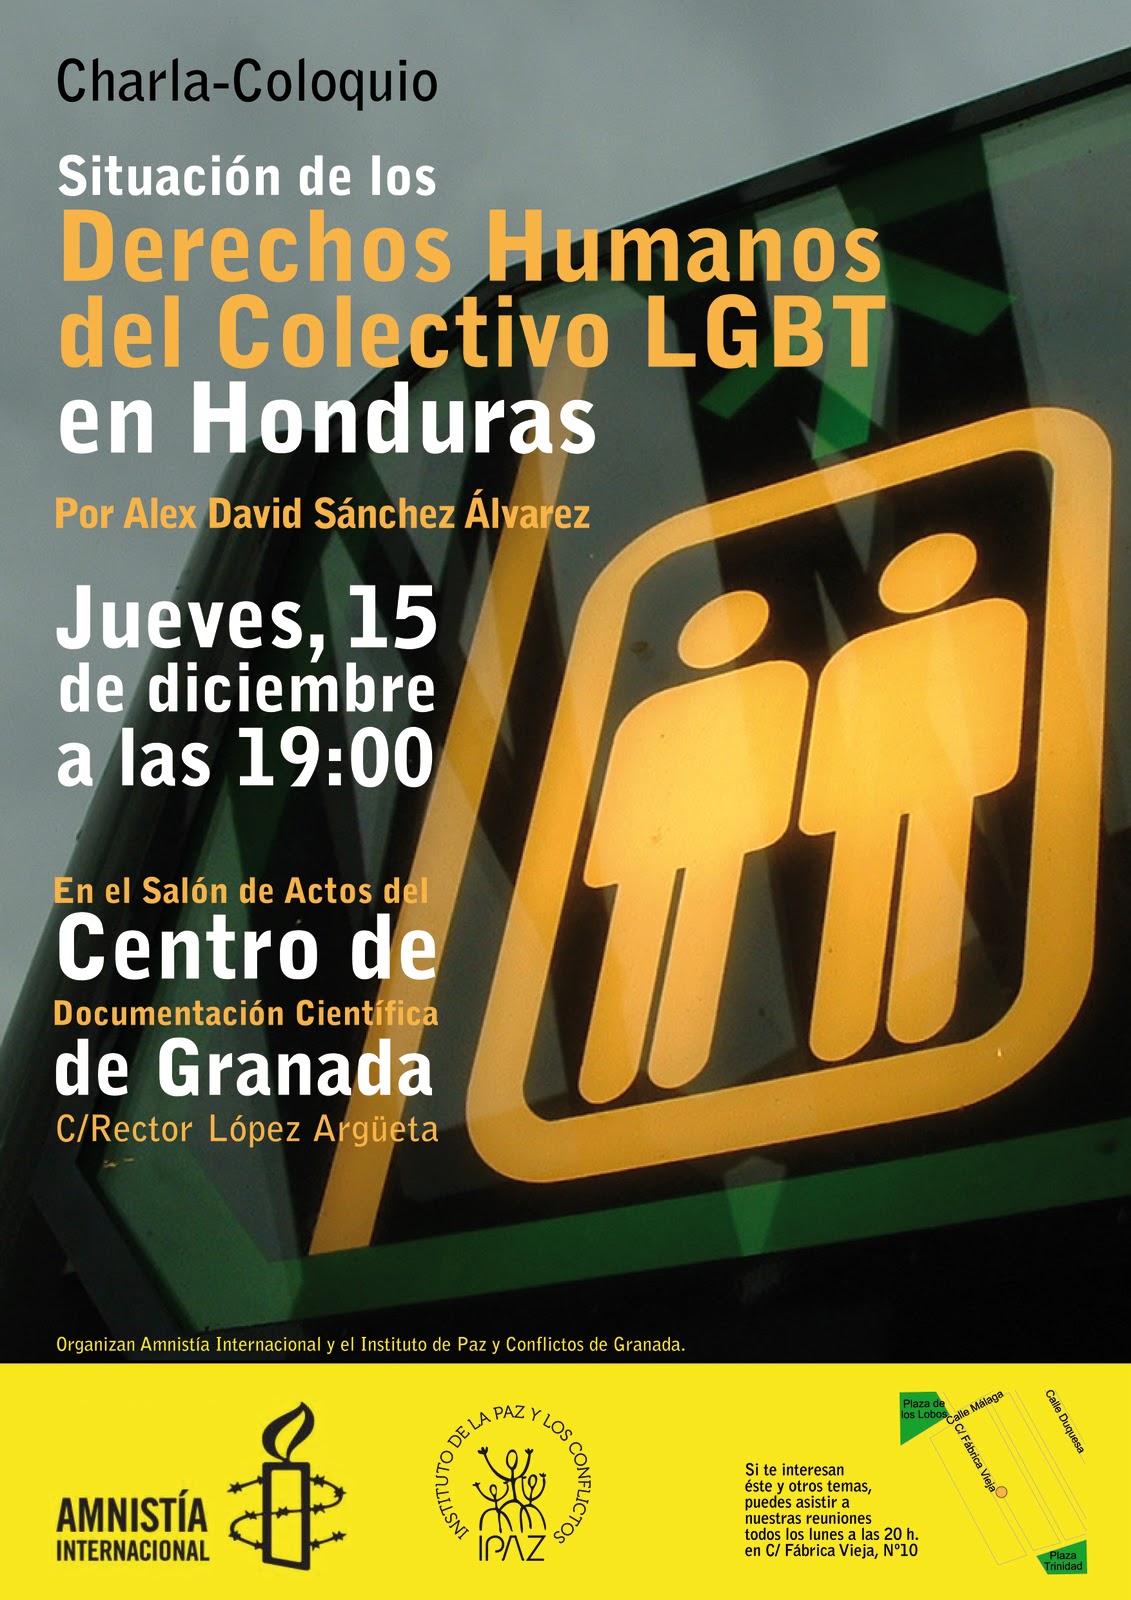 Coloquio sobre la situación del Colectivo LGBT en Honduras, a cargo de Alex David Sánchez